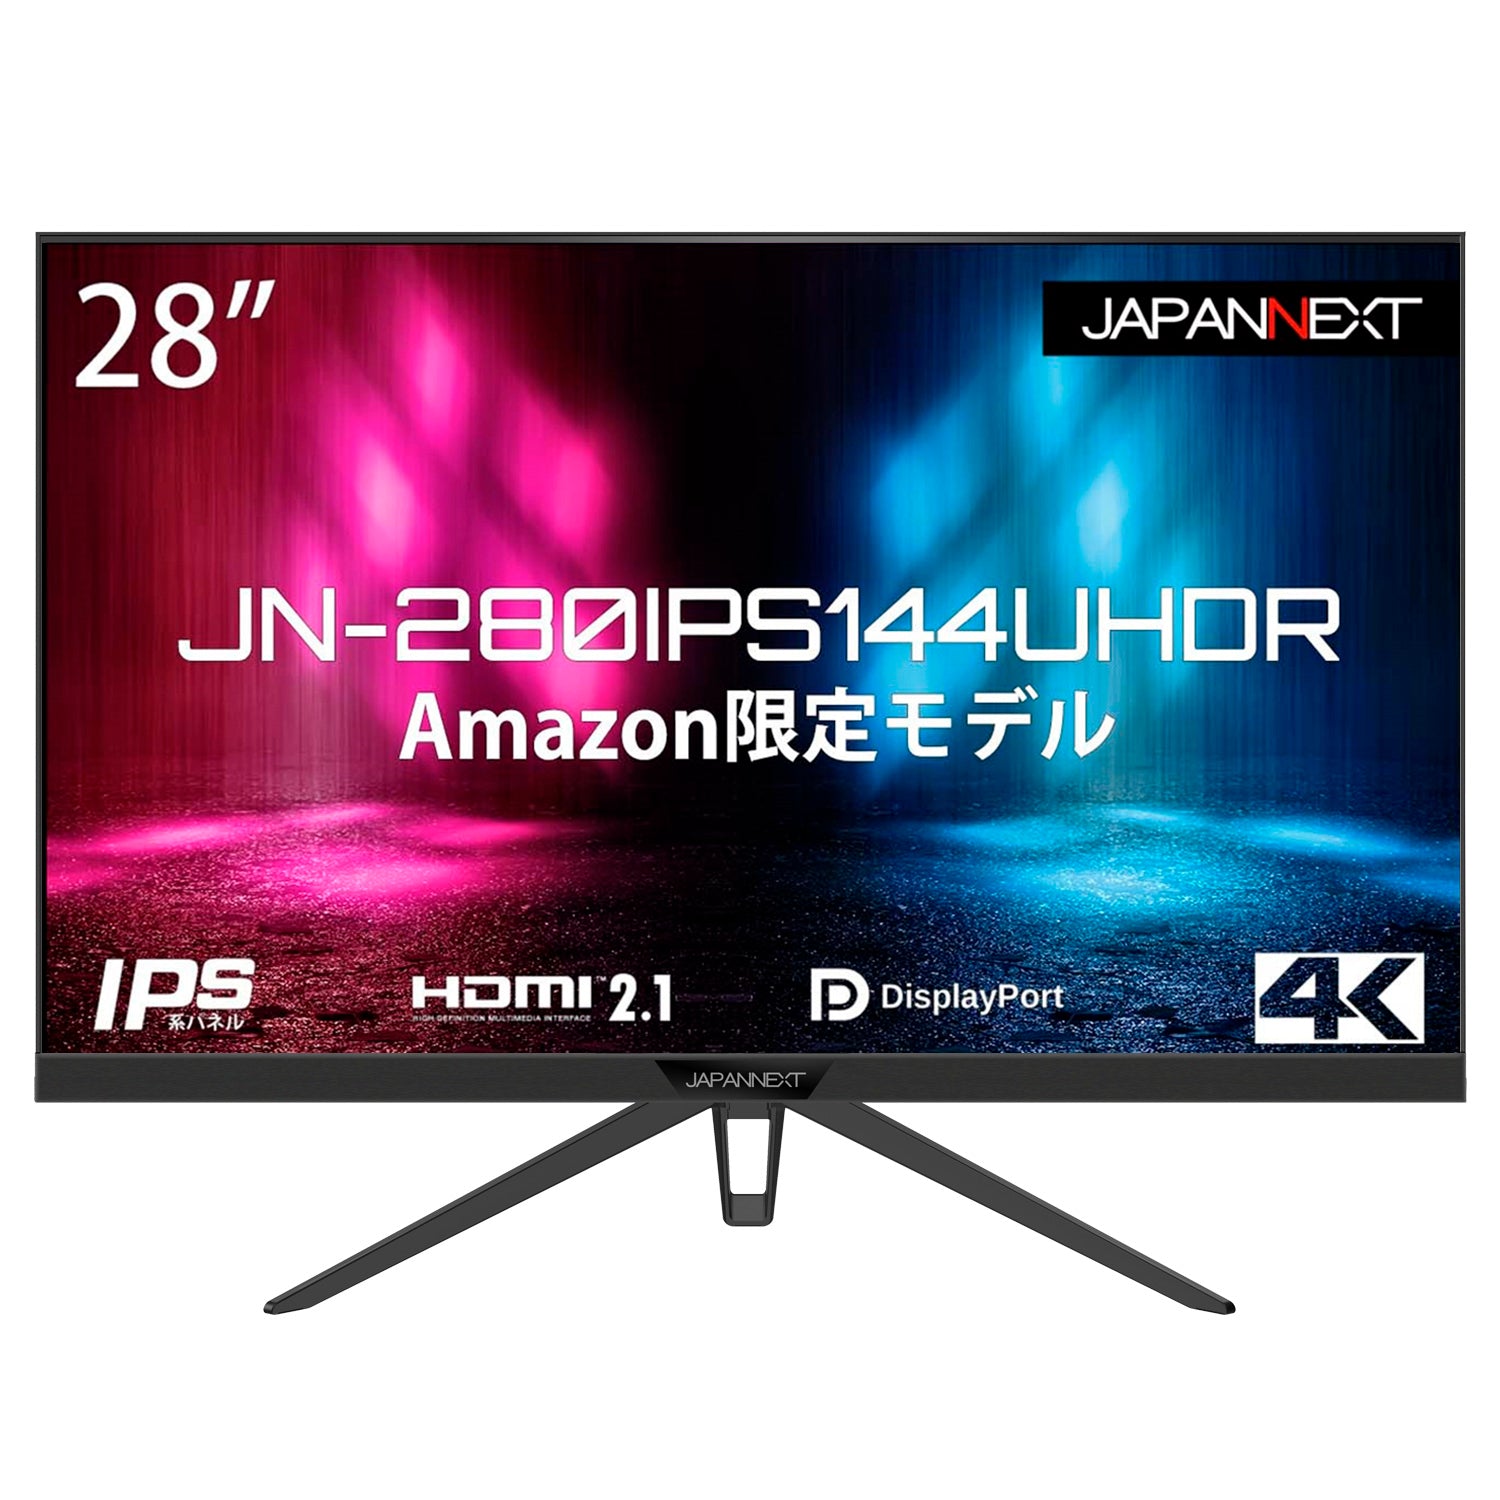 【Amazon.co.jp限定】JAPANNEXT 28インチゲーミングモニター 